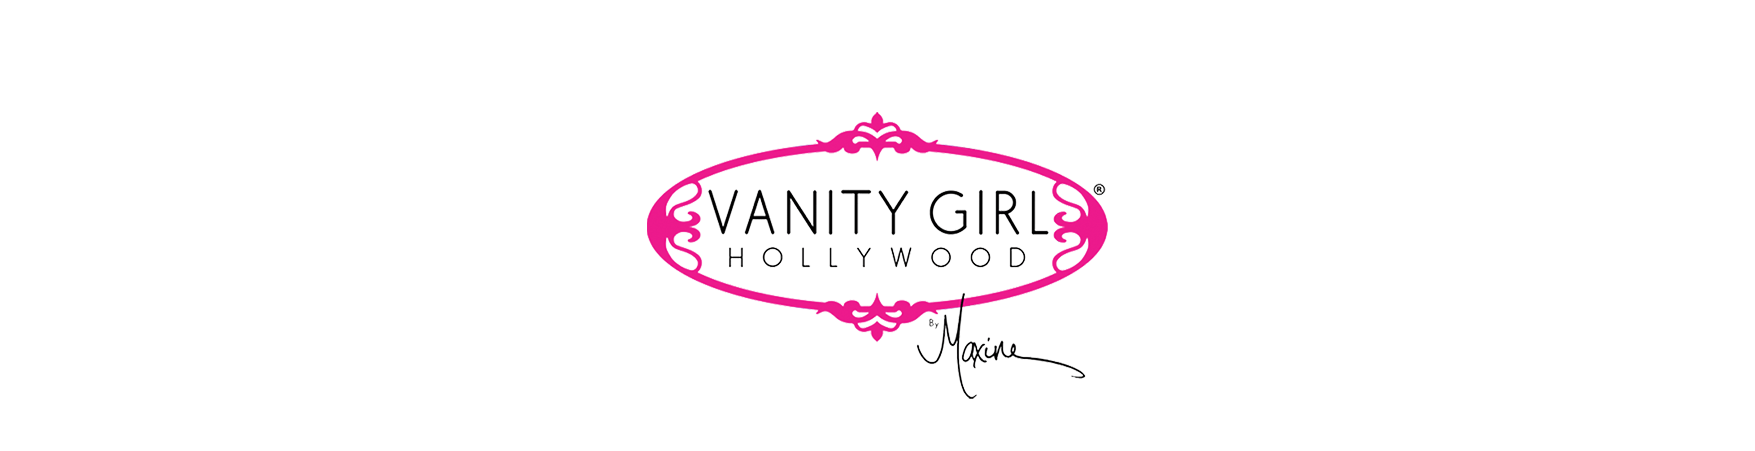 Vanity Girl Hollywood